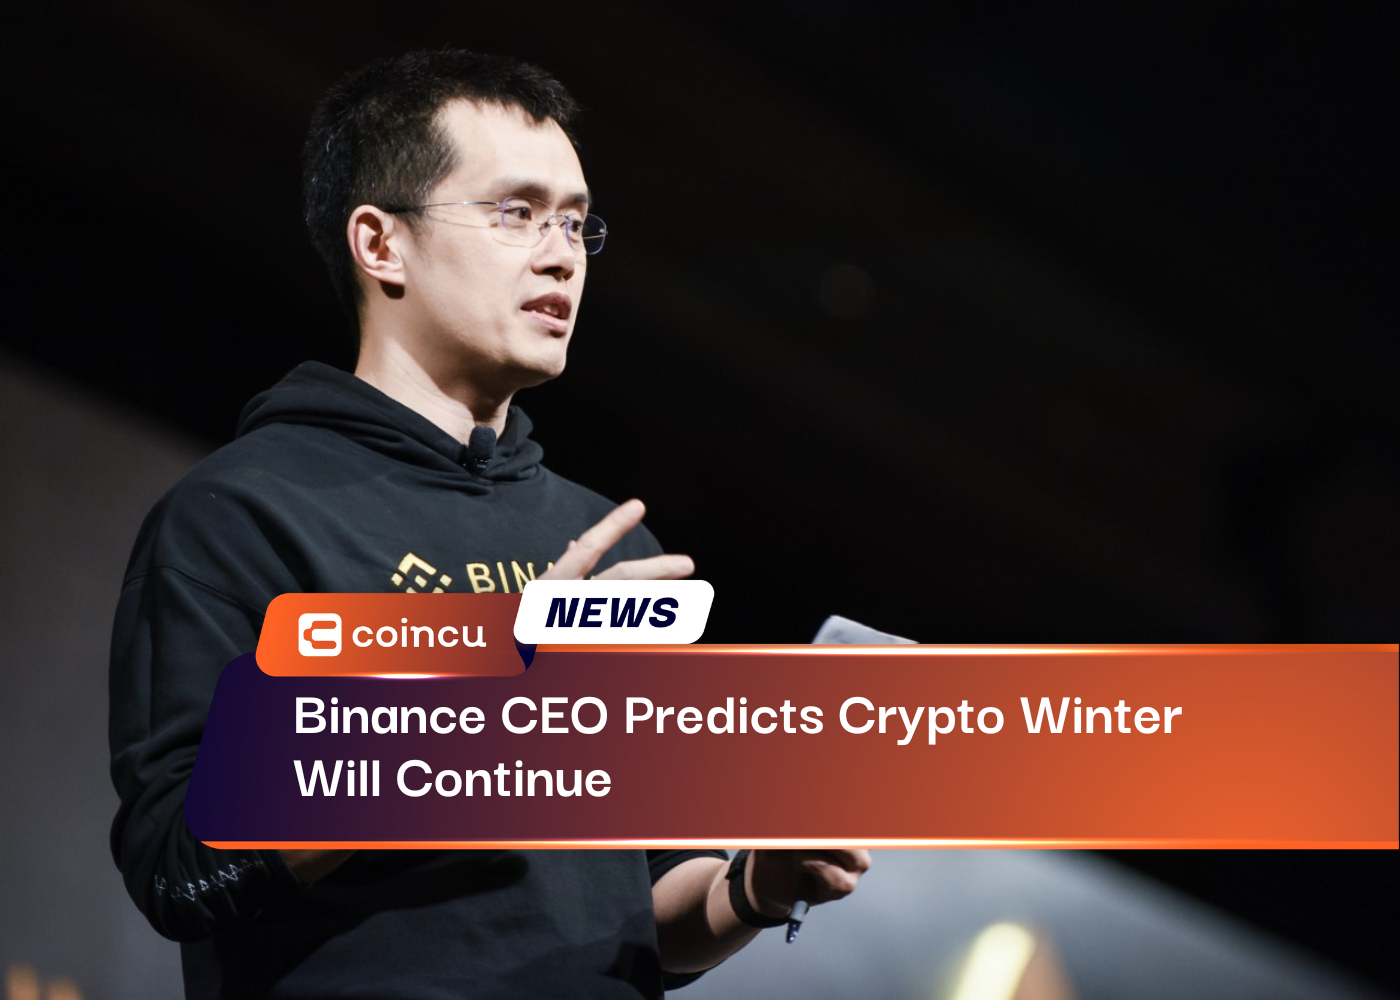 Binance CEO Predicts Crypto Winter Will Continue